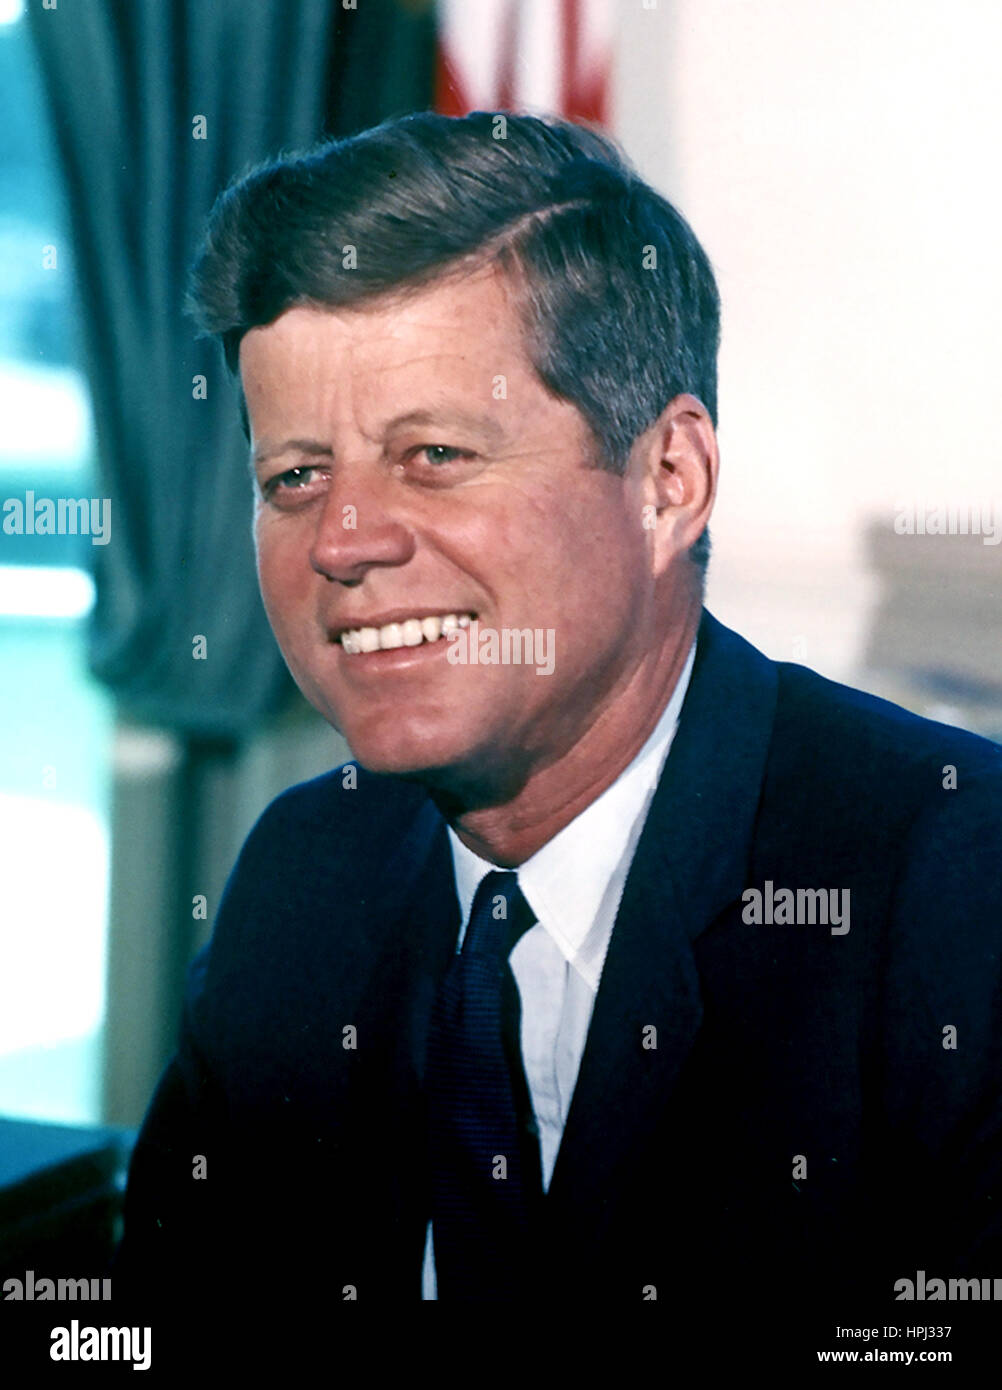 JOHN F. Kennedy come 35th Presidne degli Stati Uniti in 1963. Foto: Cecil Stoughton/White House Gazzetta Foto Stock